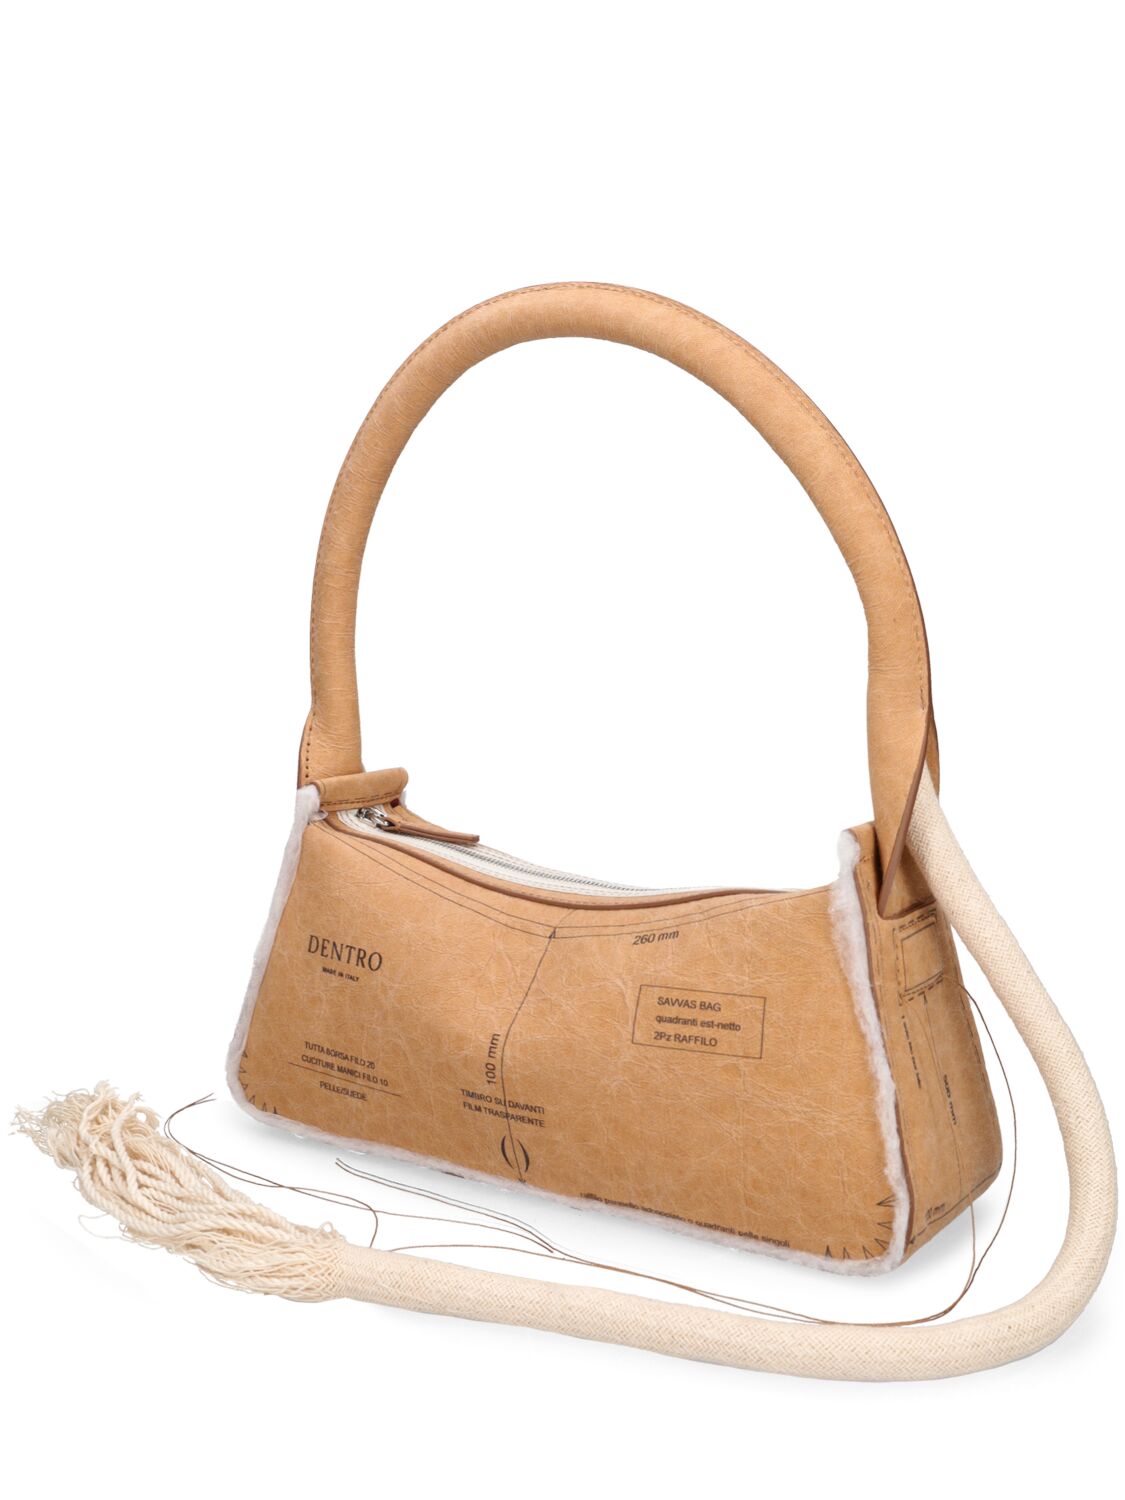 Shop Dentro Savvas Shoulder Bag In Brown